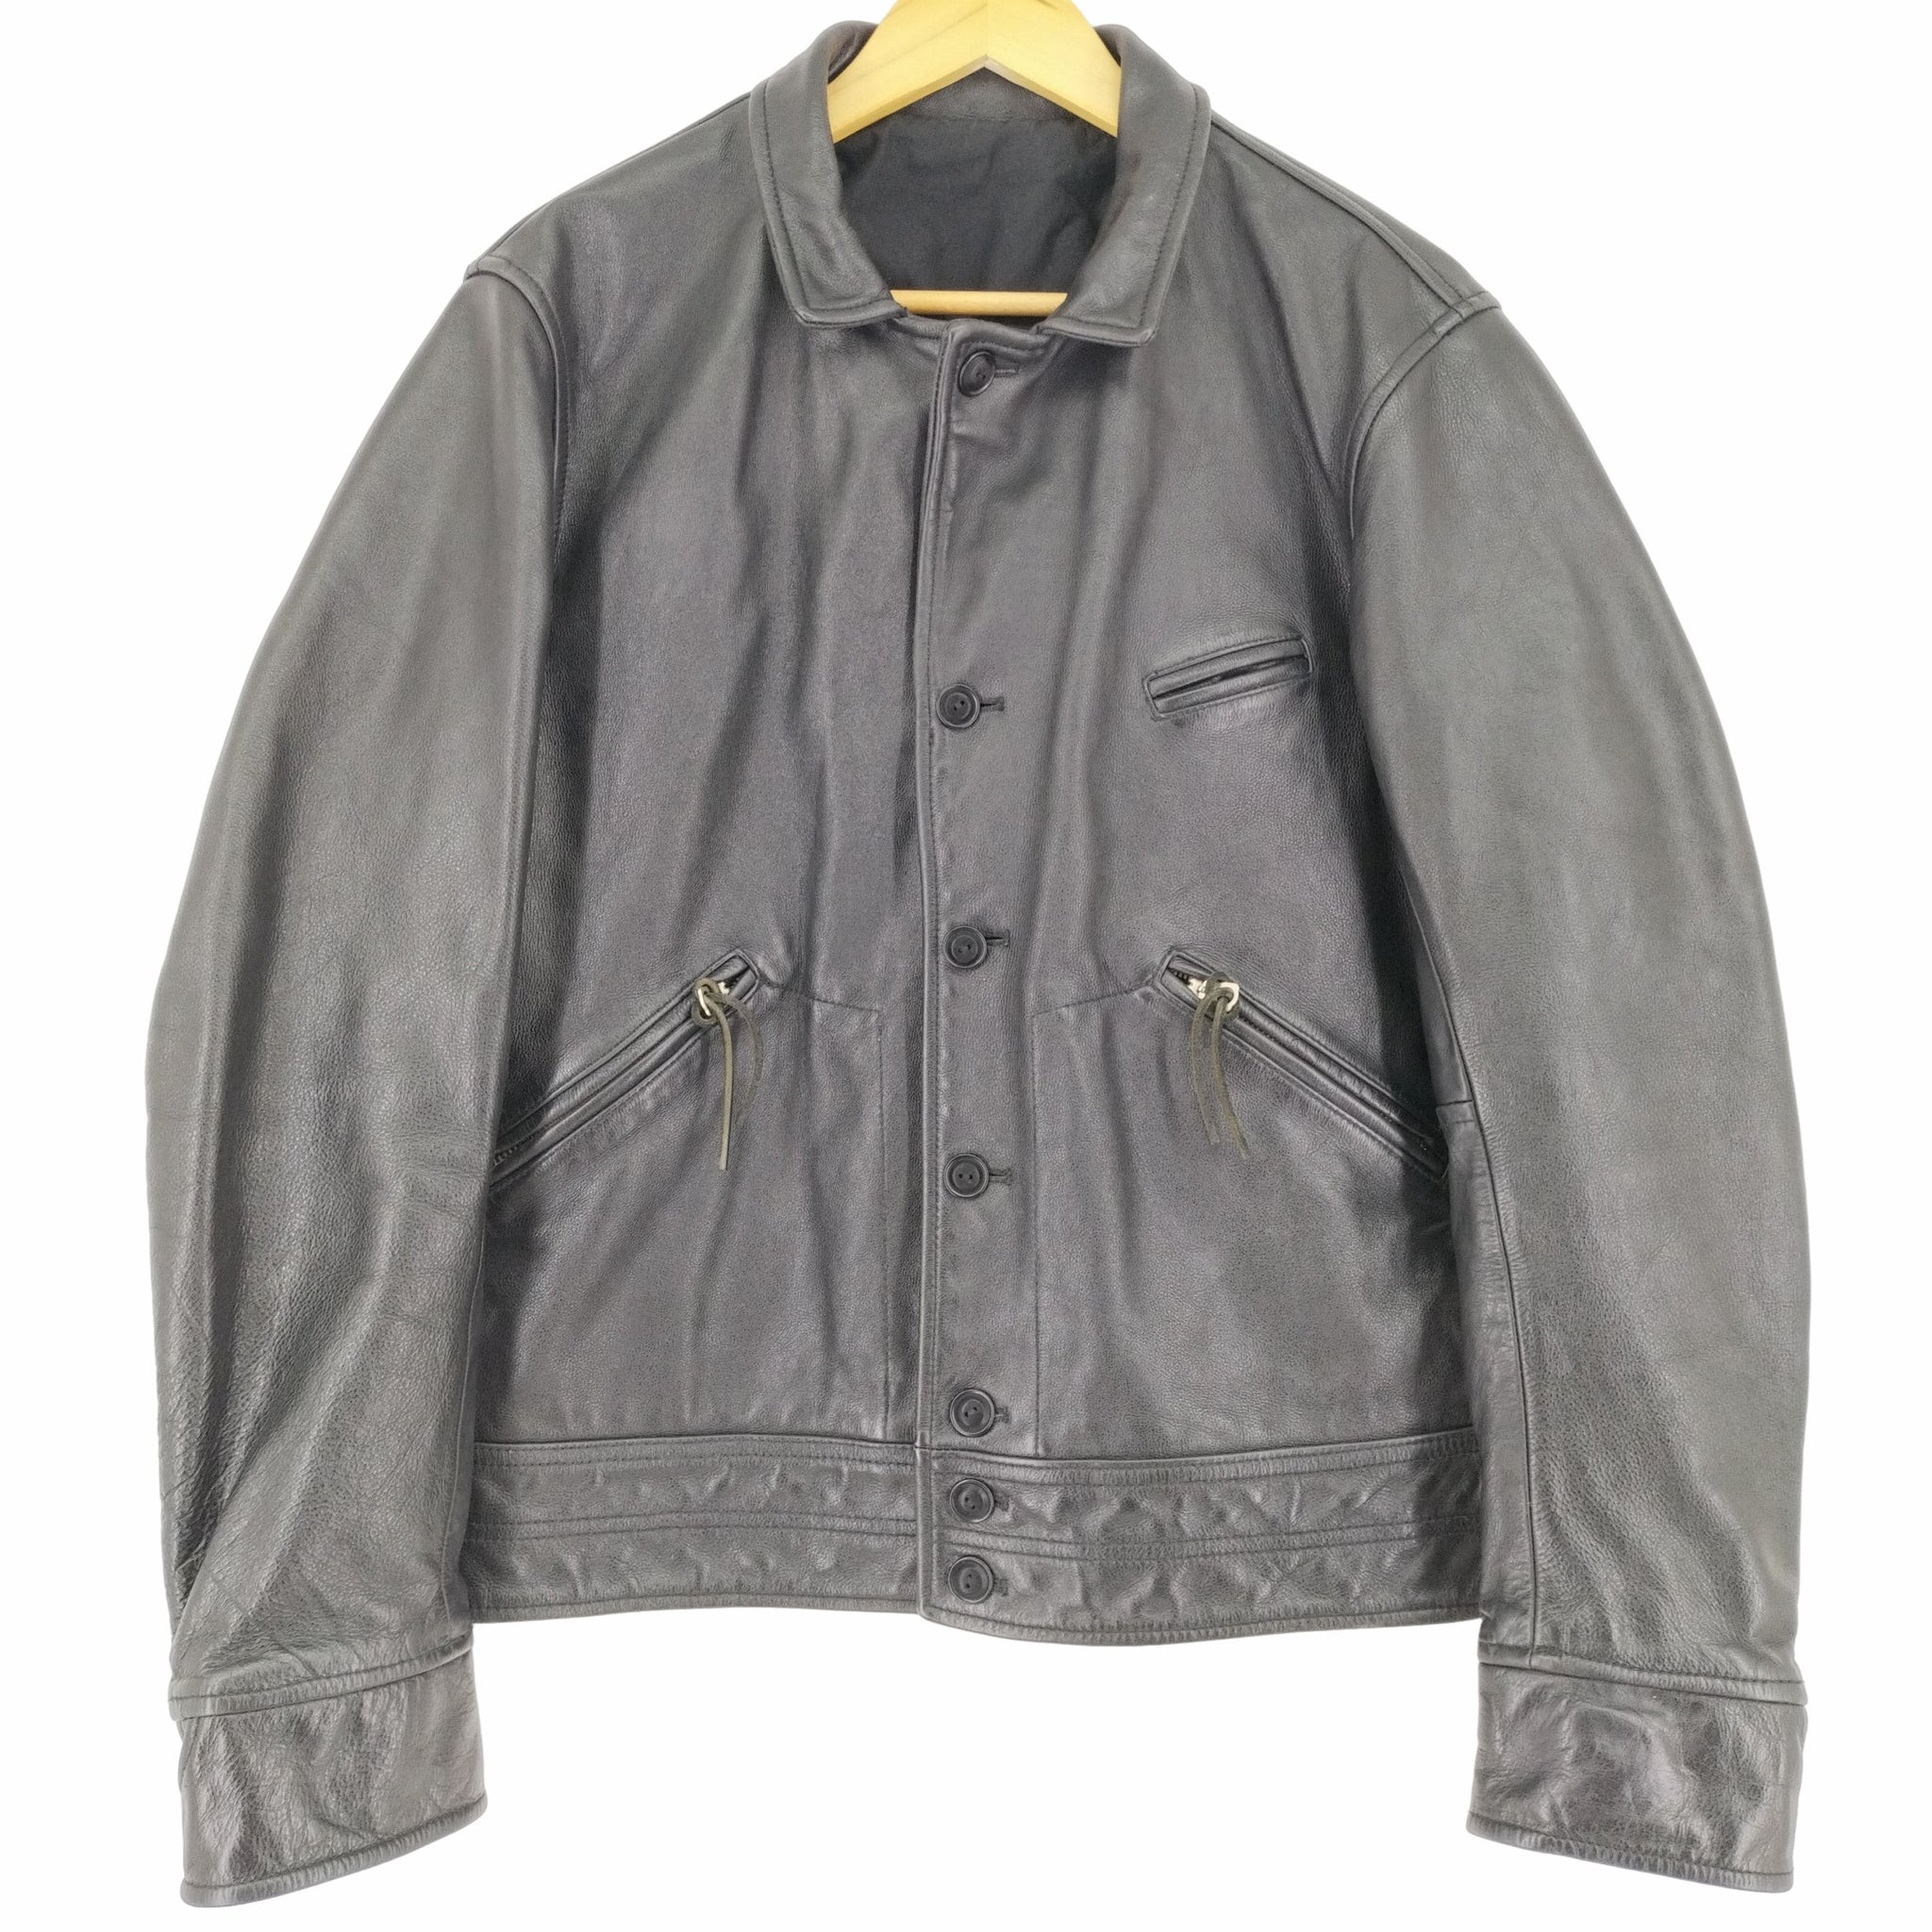 neighborhood leather jacket